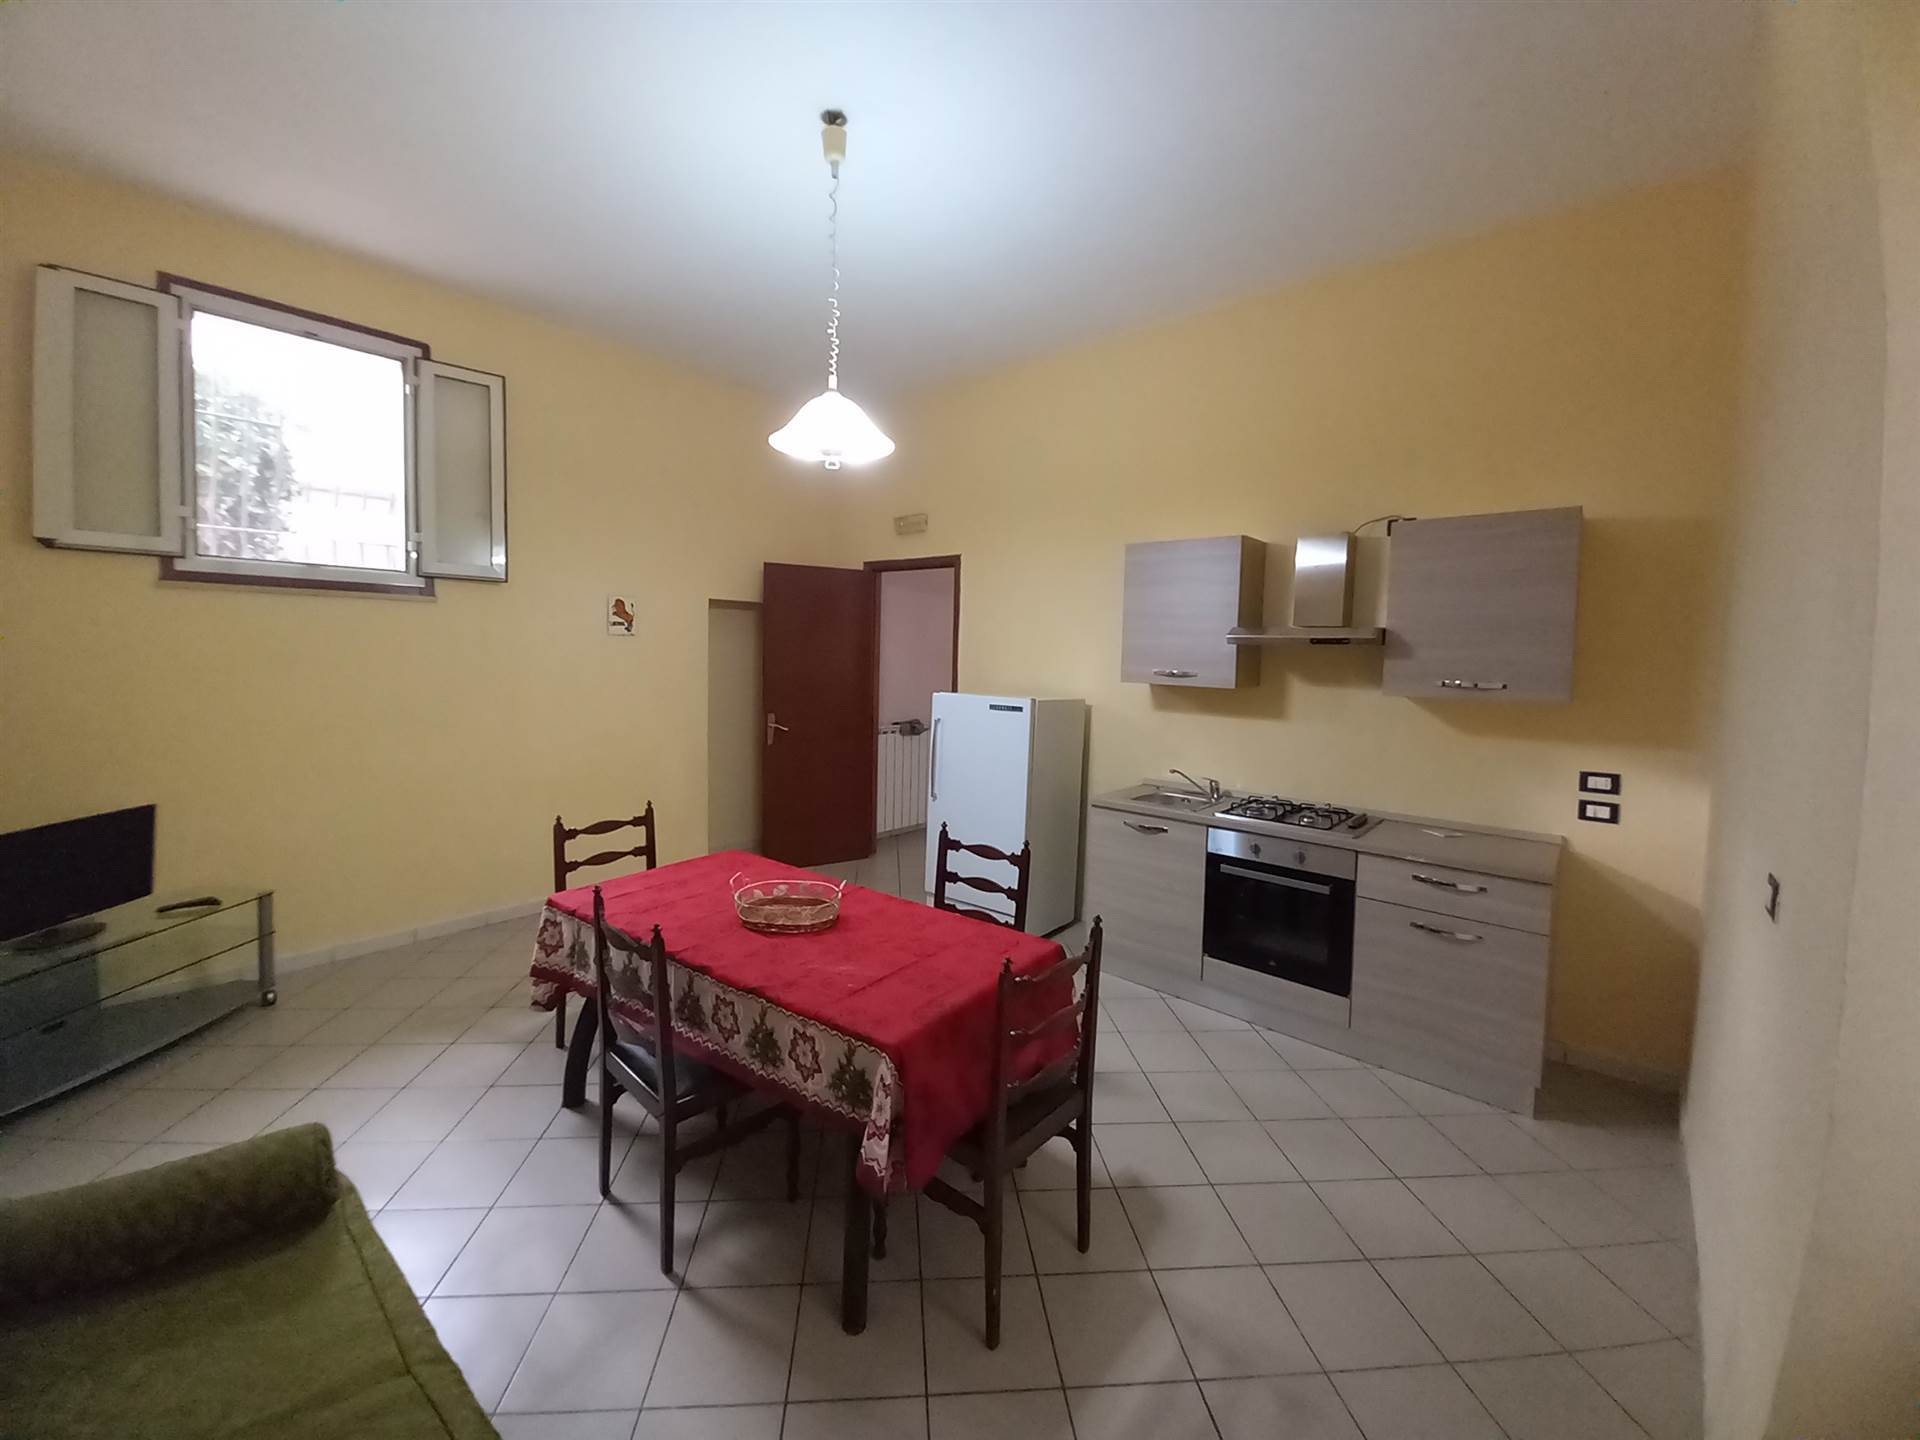 Appartamento in affitto a Comiziano, 3 locali, prezzo € 400 | PortaleAgenzieImmobiliari.it